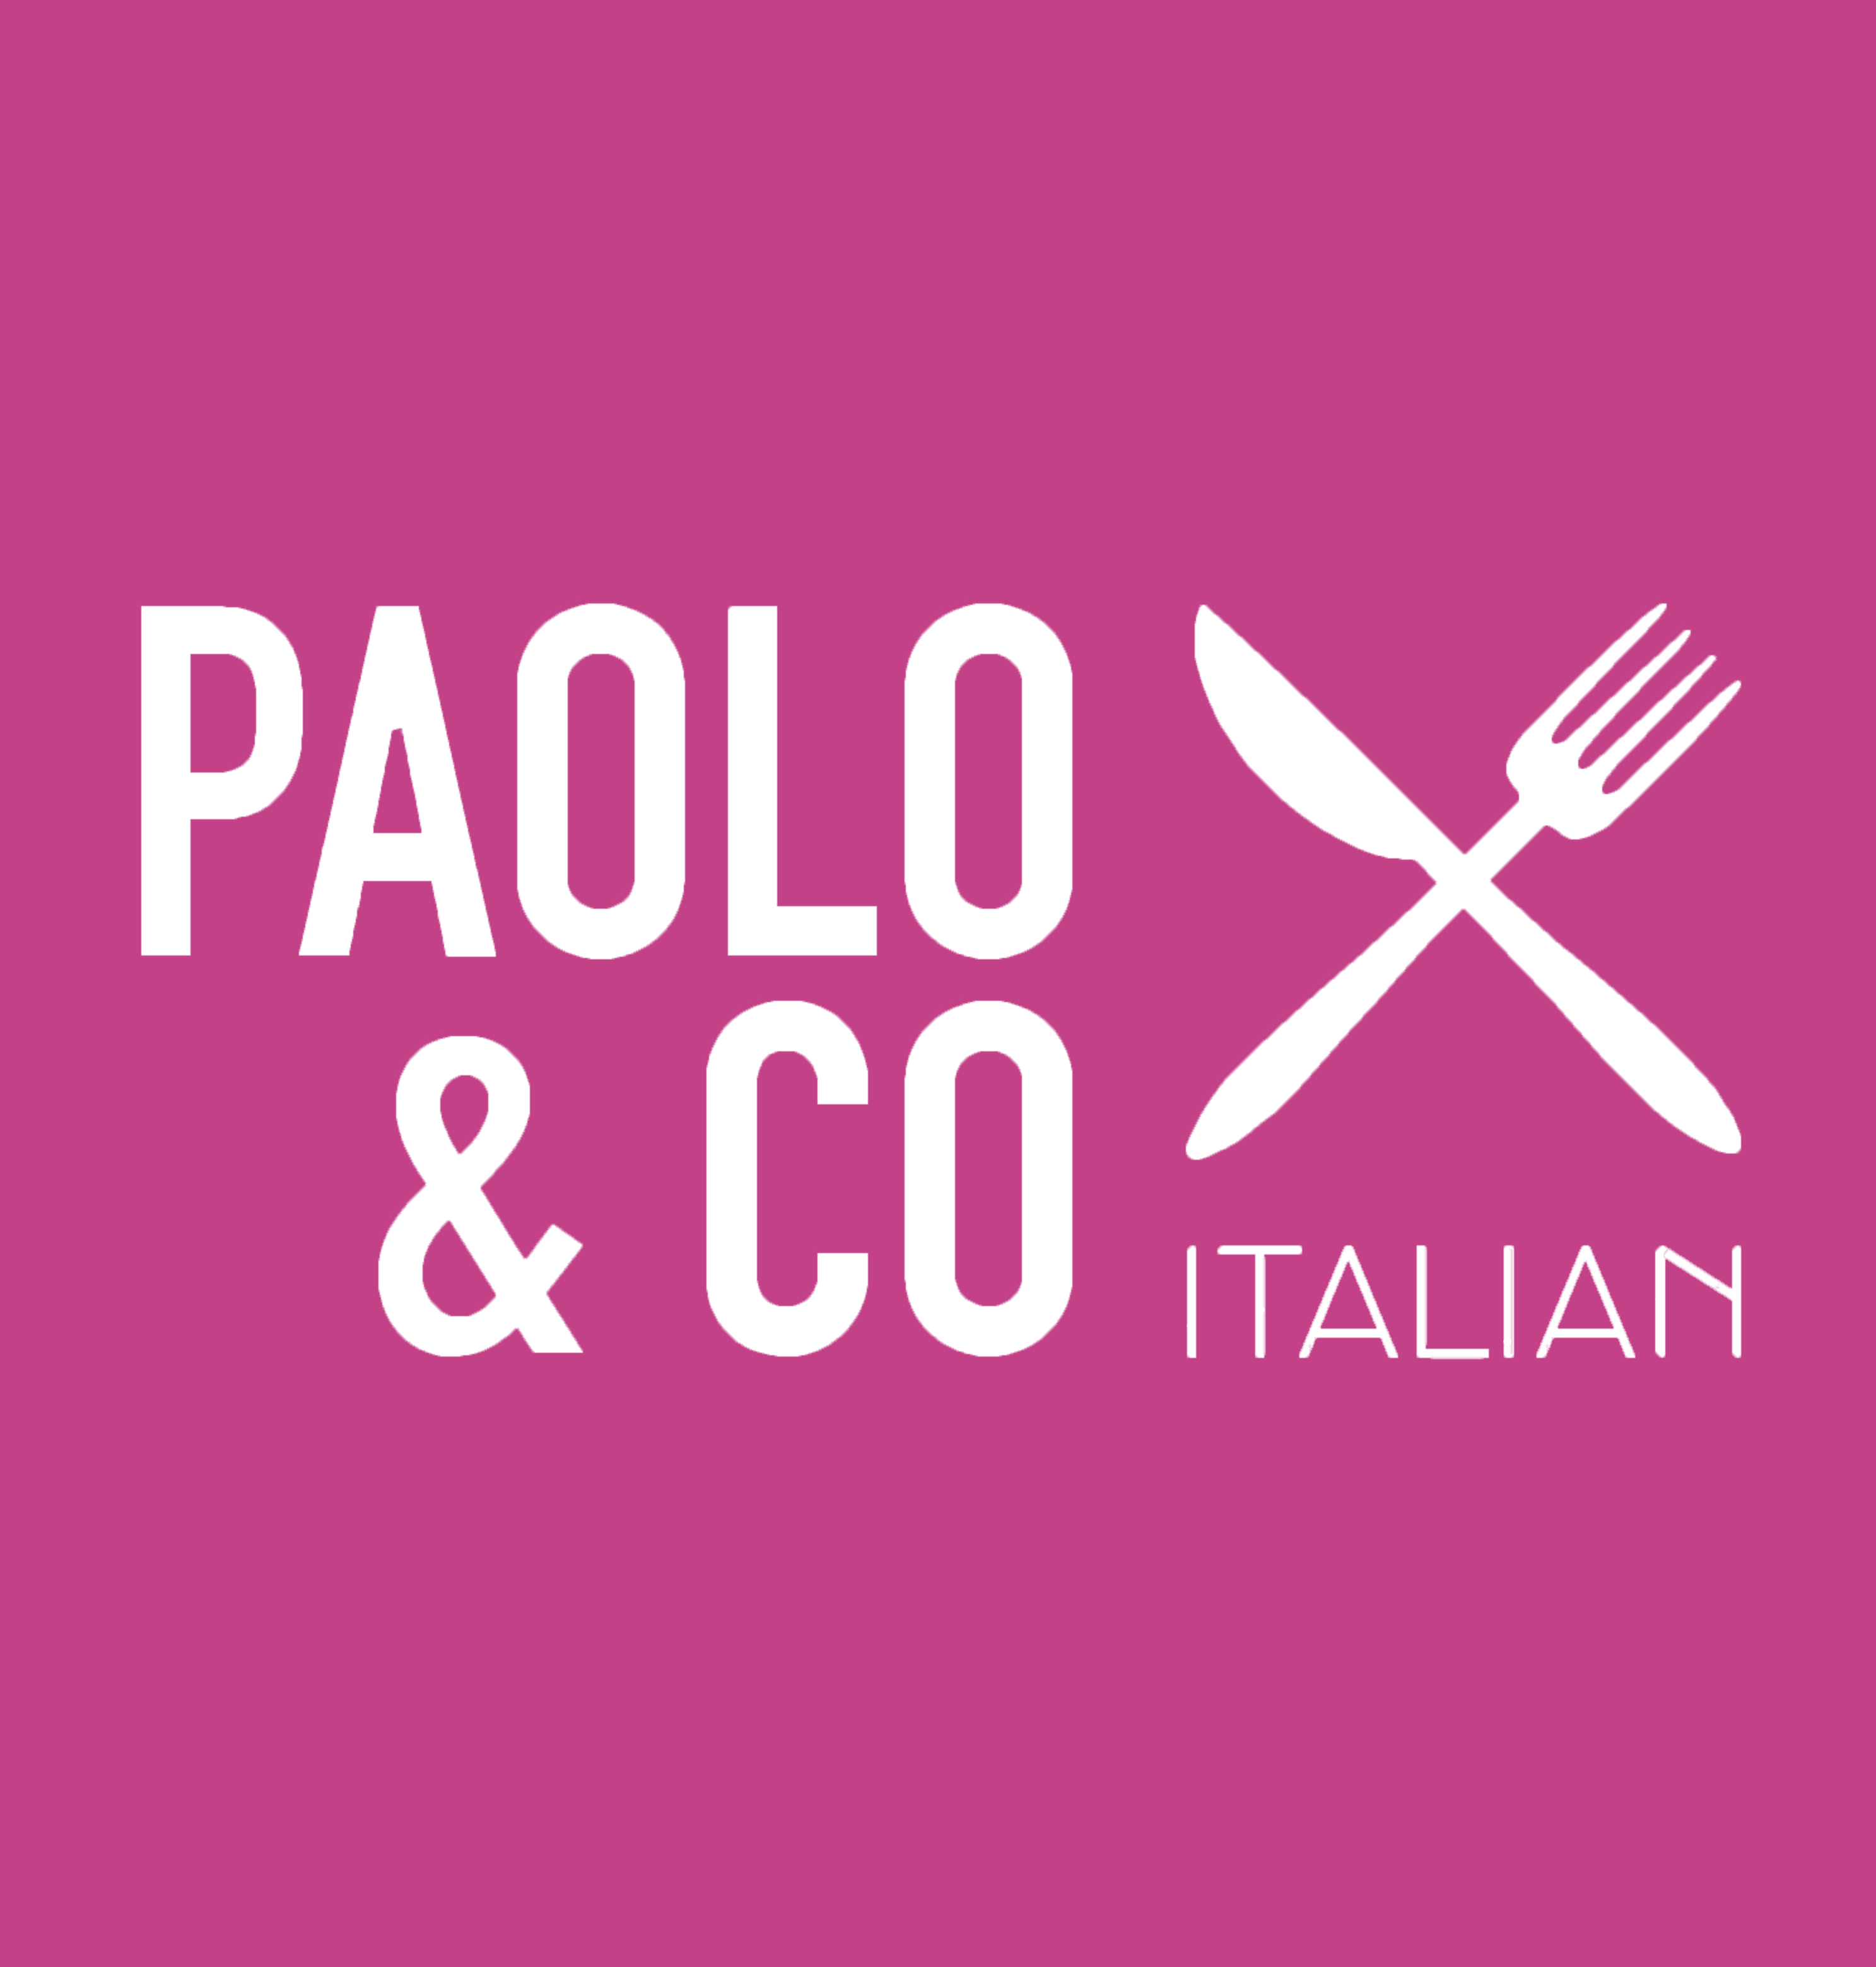 Paolo & Co